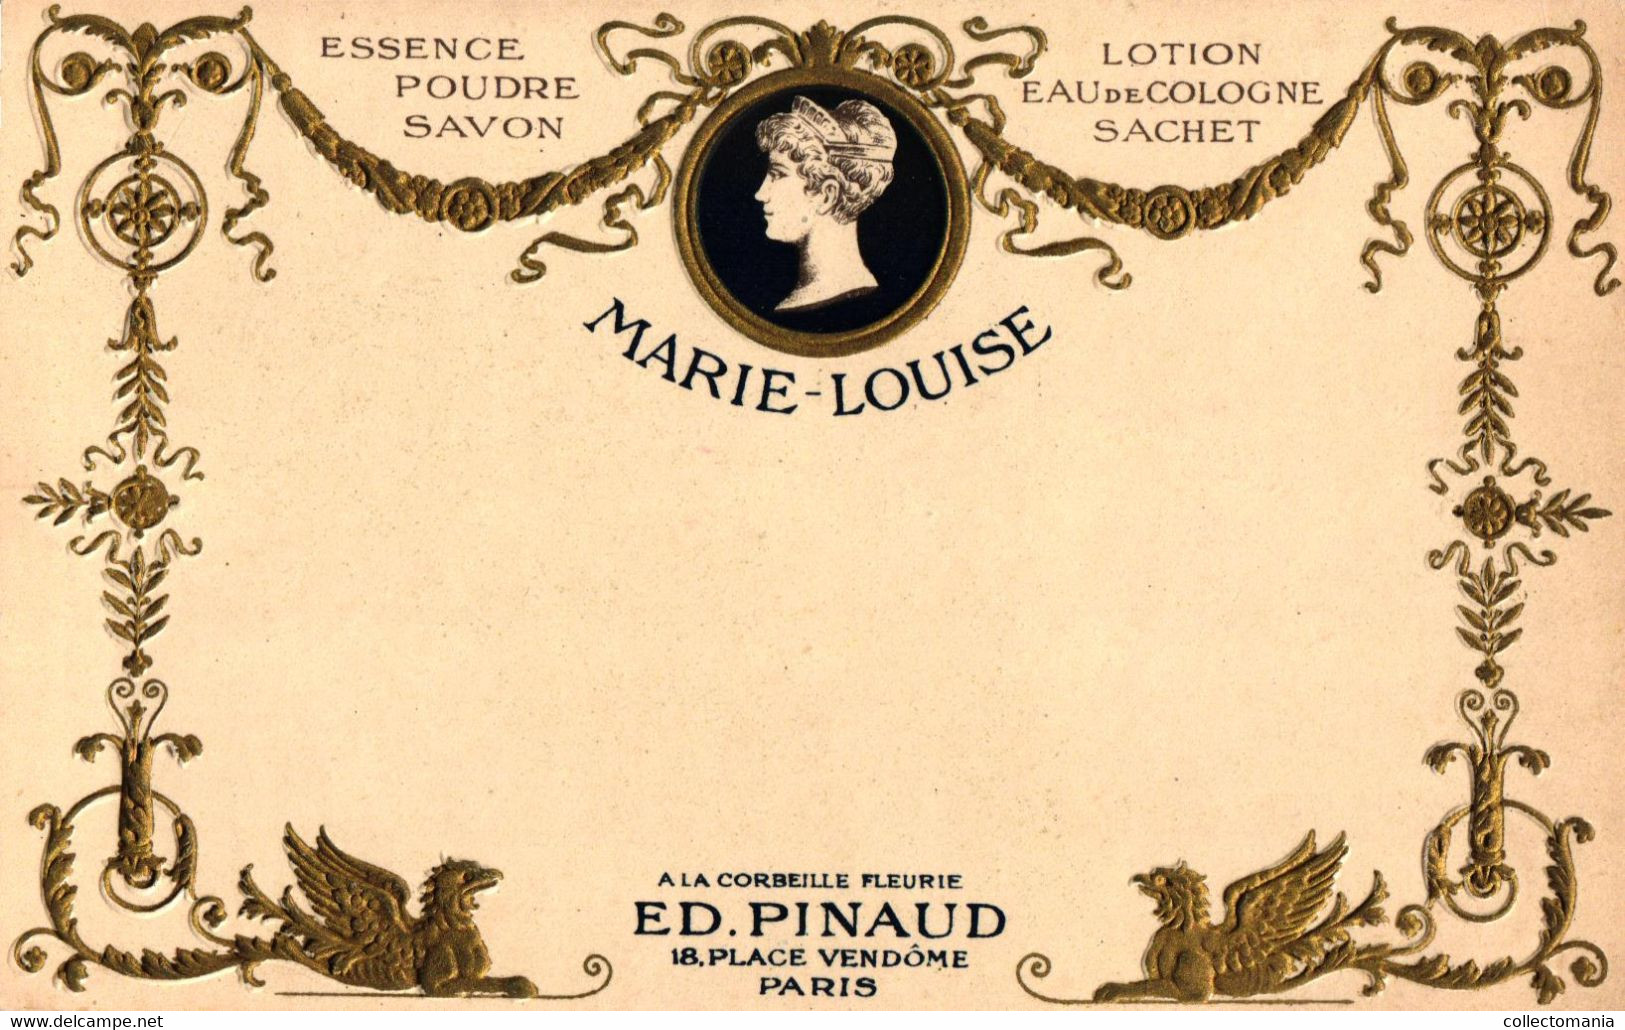 9 CP. Parfumerie Ed. Pinaud Place Vendôme Paris Expo 1900 Parfum Mad.Royale Essence Marie-Louise Embossed Relief Embossé - Oud (tot 1960)